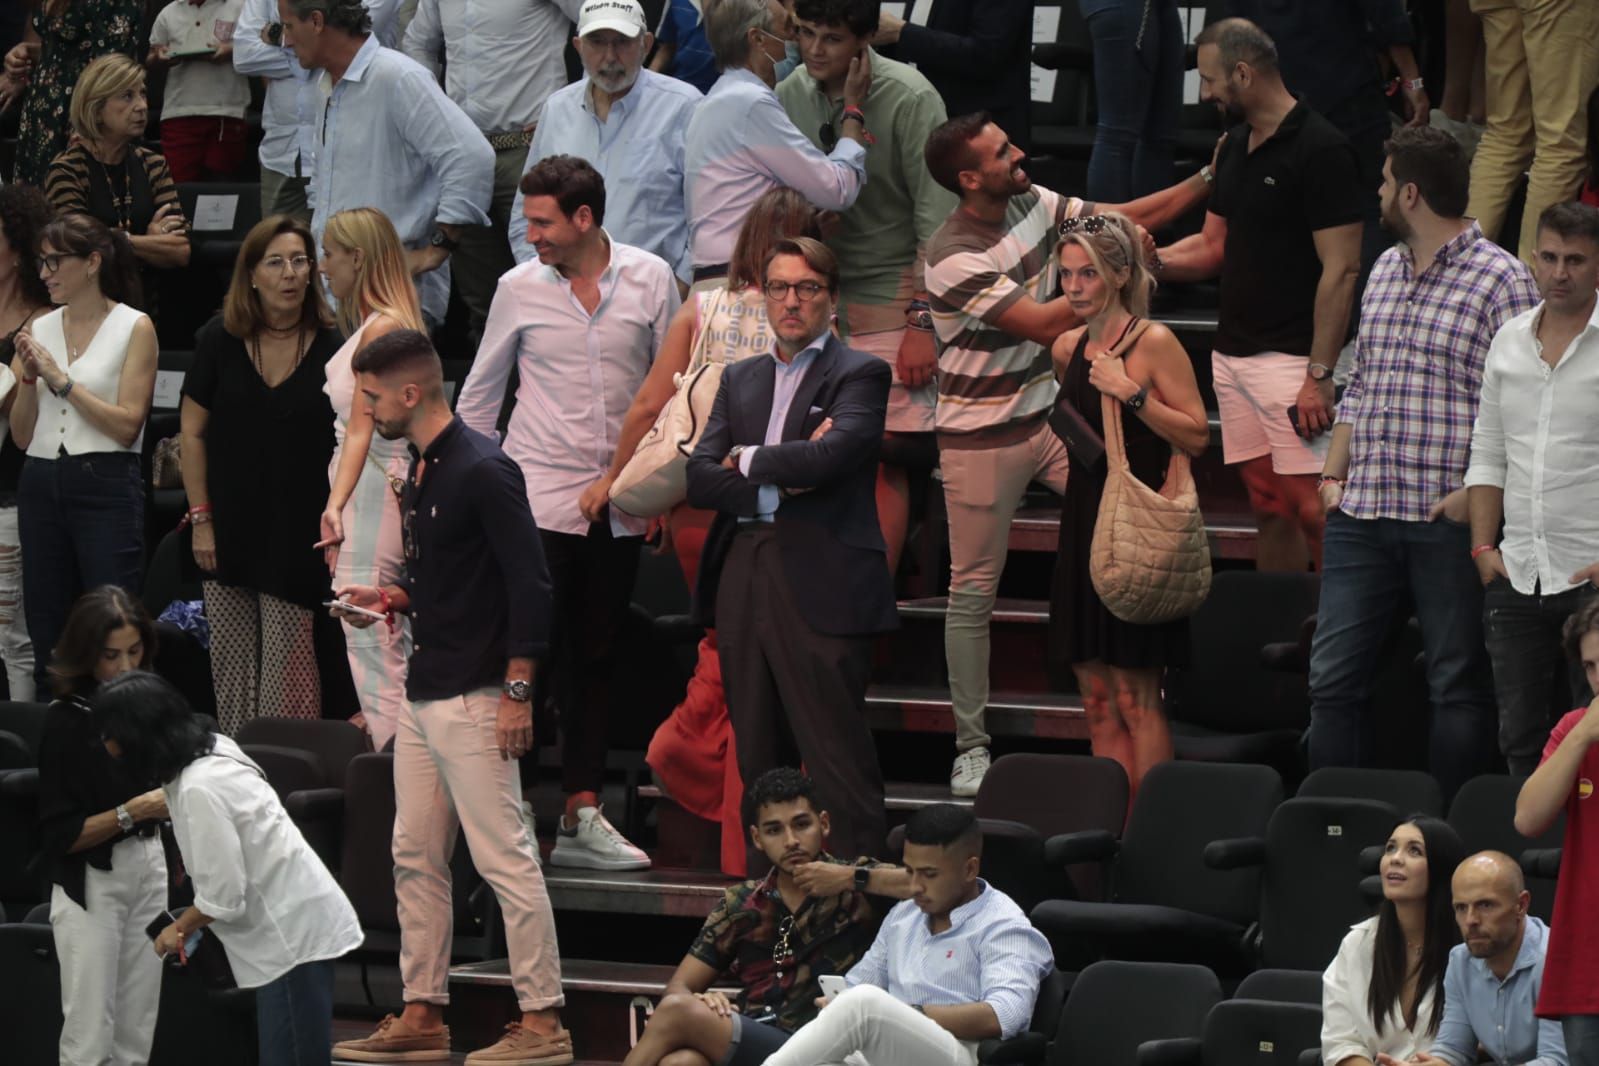 Las imágenes del ambientazo en la Copa Davis en València